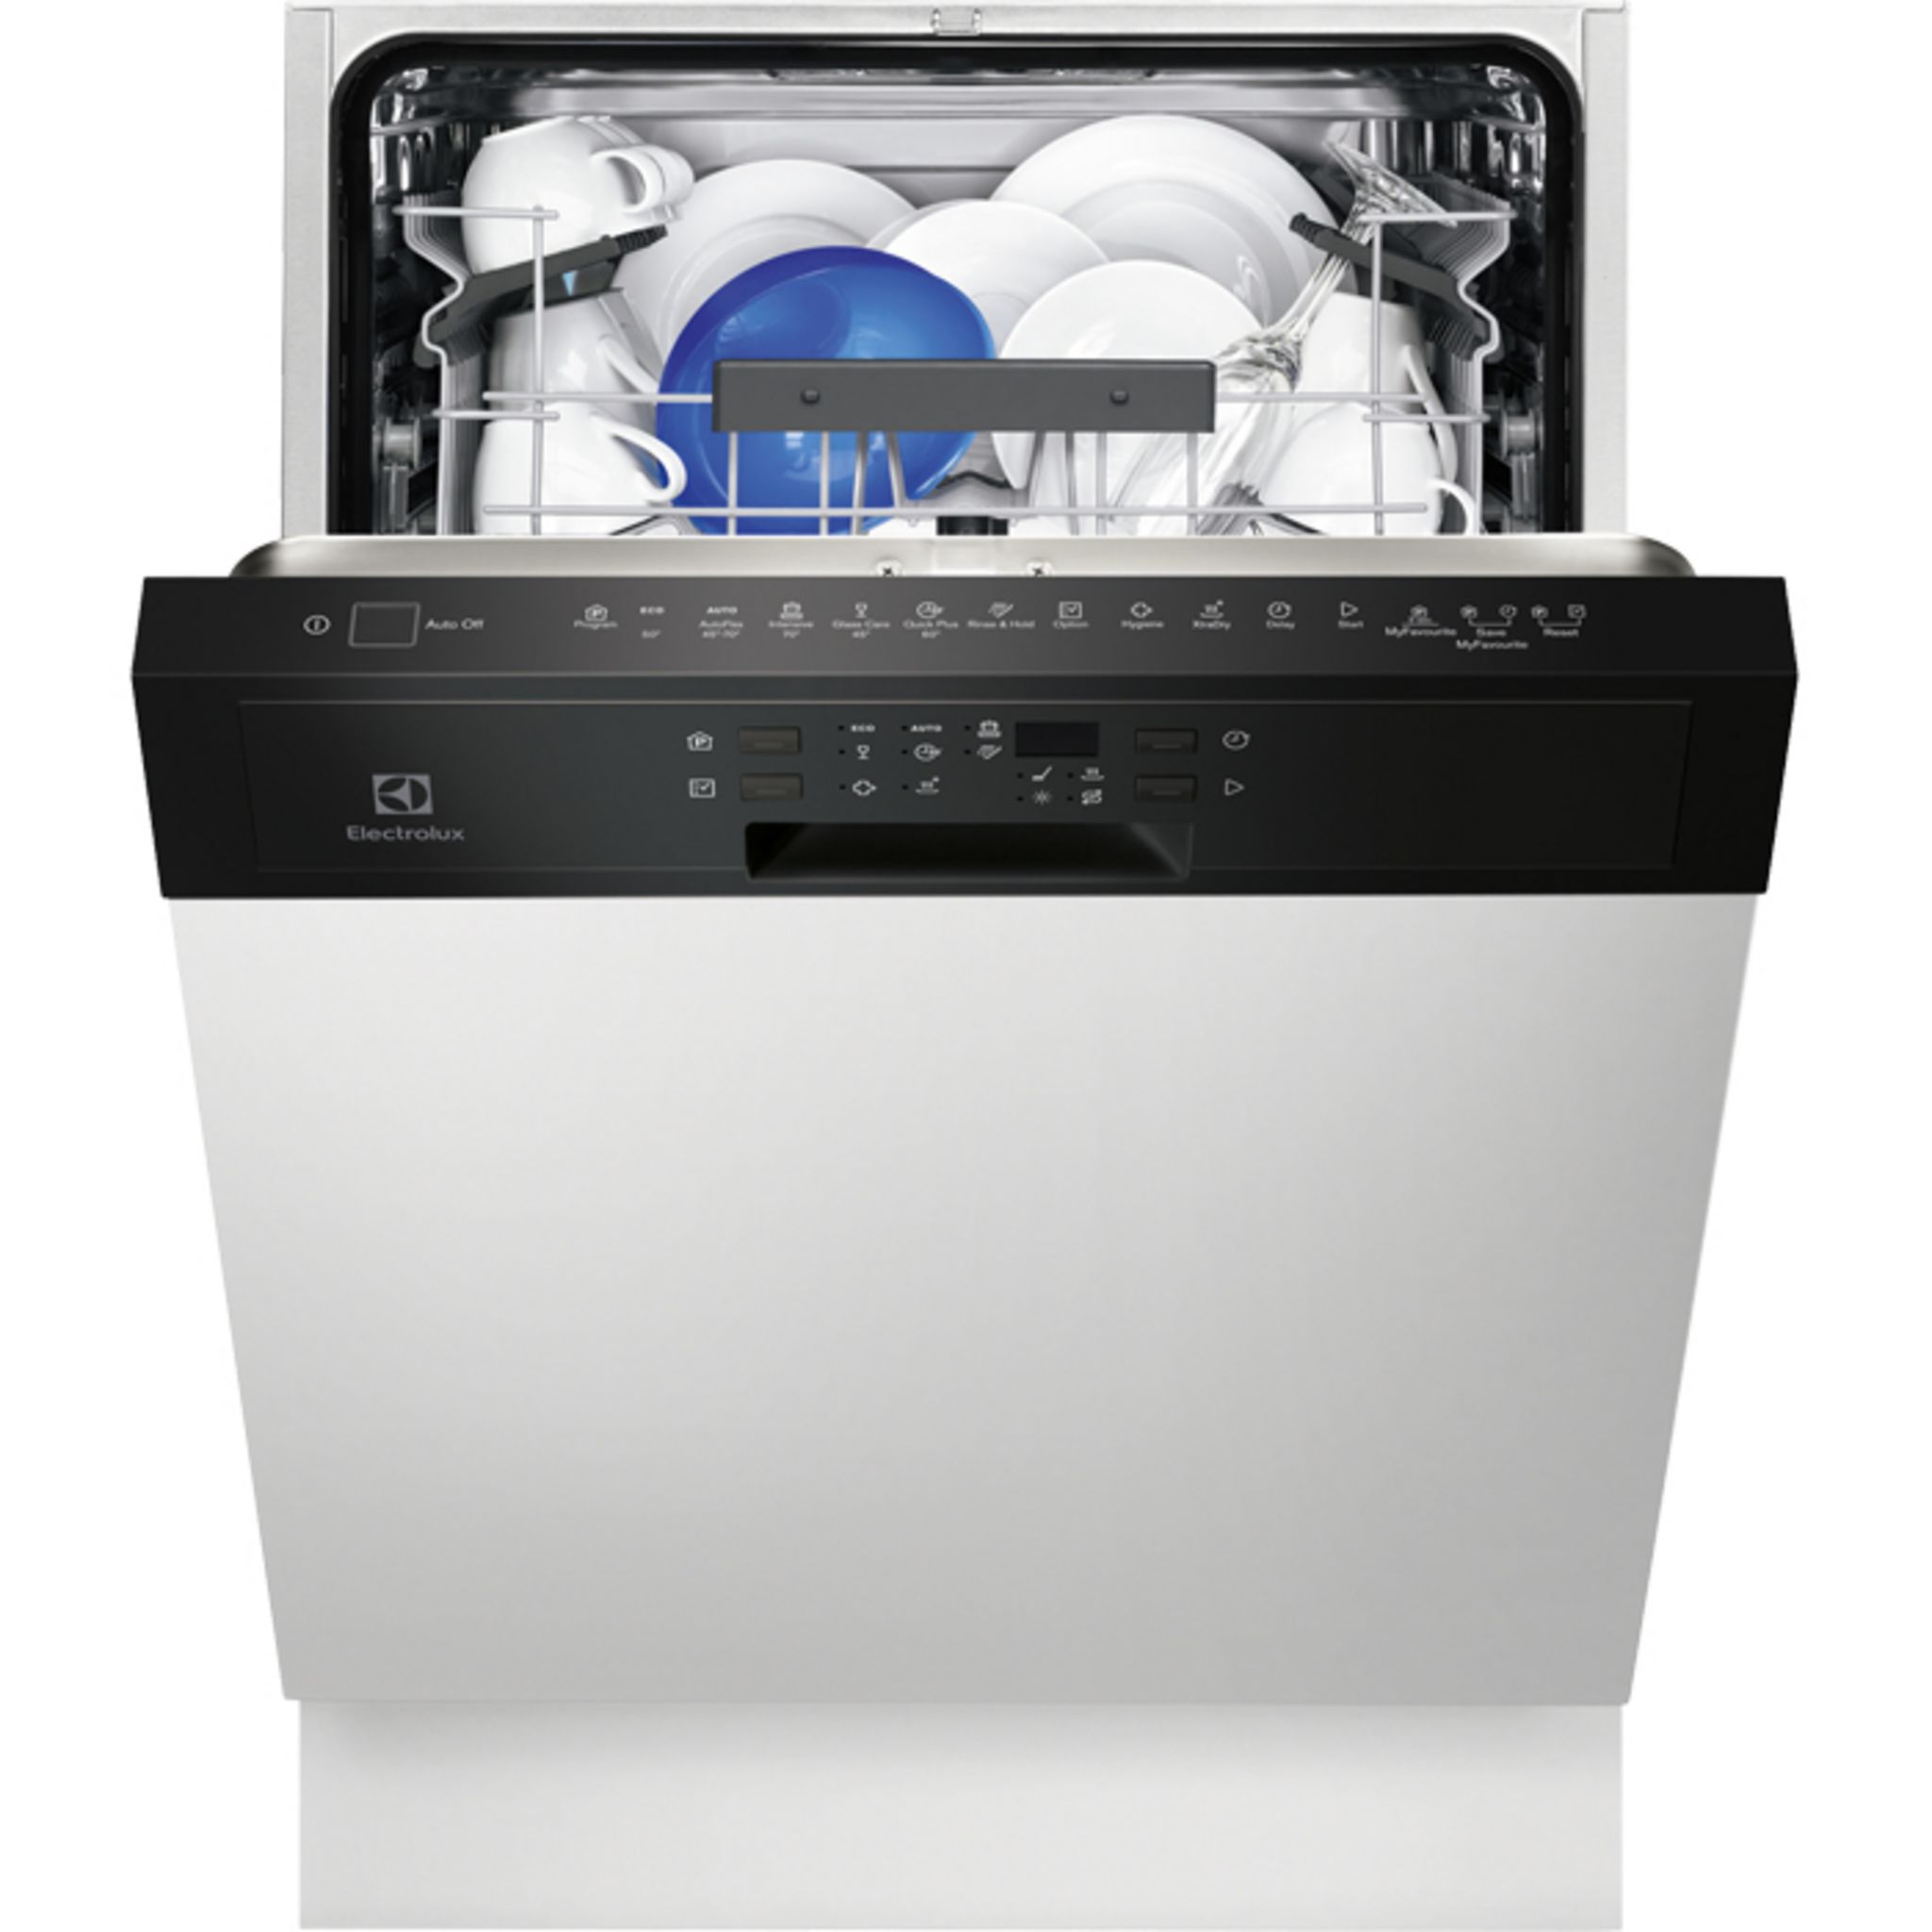 Посудомоечные машины встраиваемые фото. Посудомоечная машина Electrolux esi 6601 Rox. Электролюкс посудомоечная машина встраиваемая 2010. Посудомойка Электролюкс 60. Посудомойка Электролюкс 60 см встраиваемая.